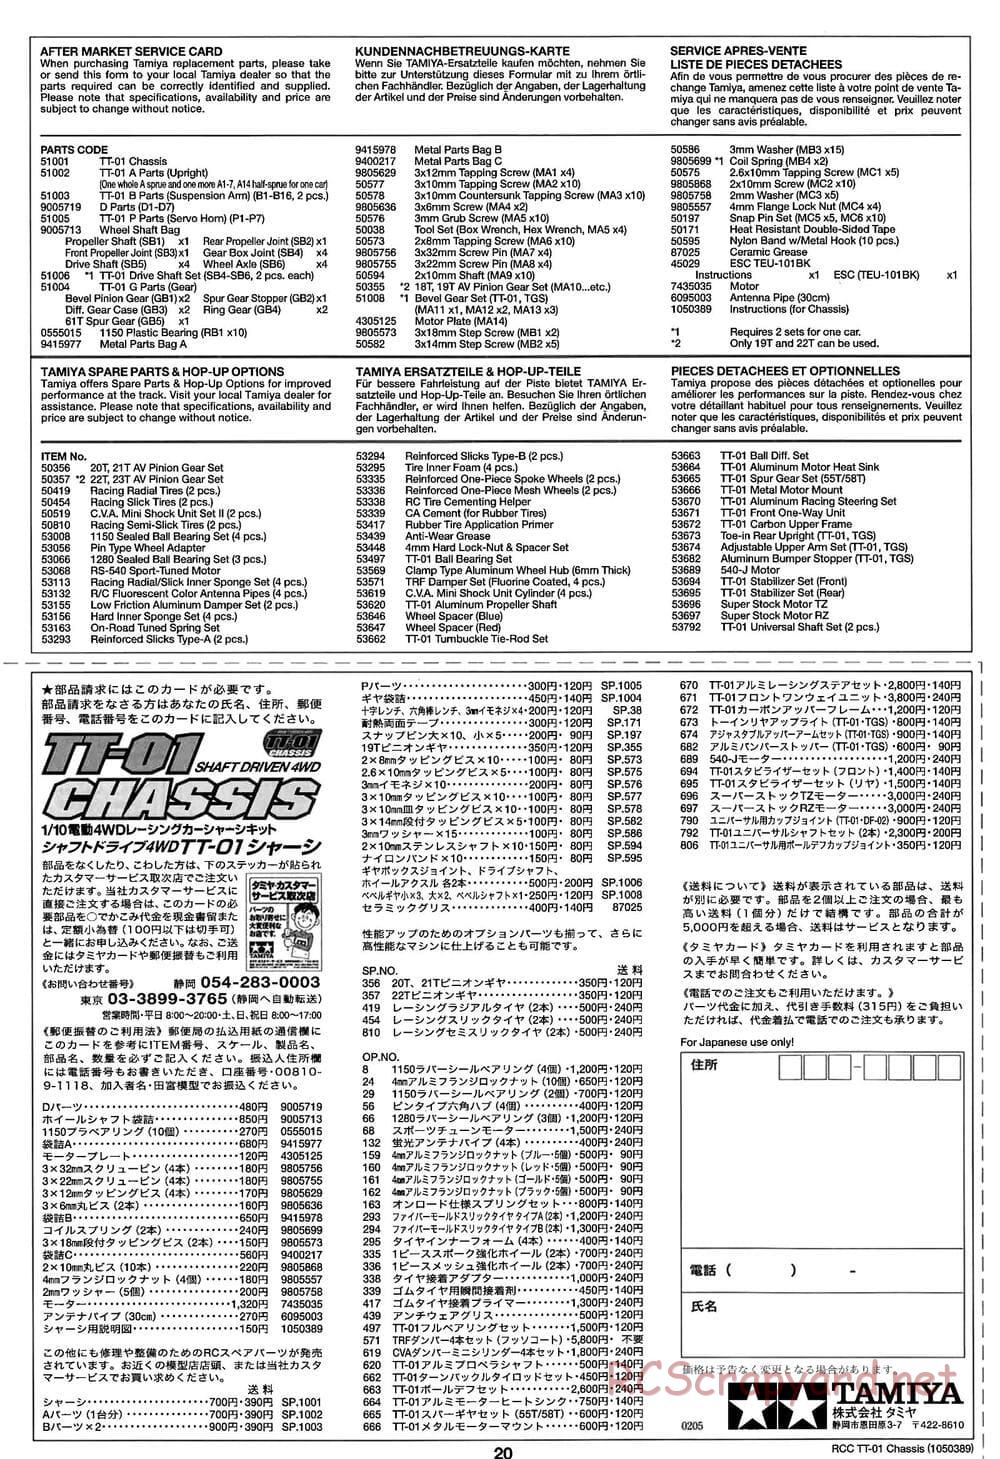 Tamiya - TT-01 Chassis - Manual - Page 20